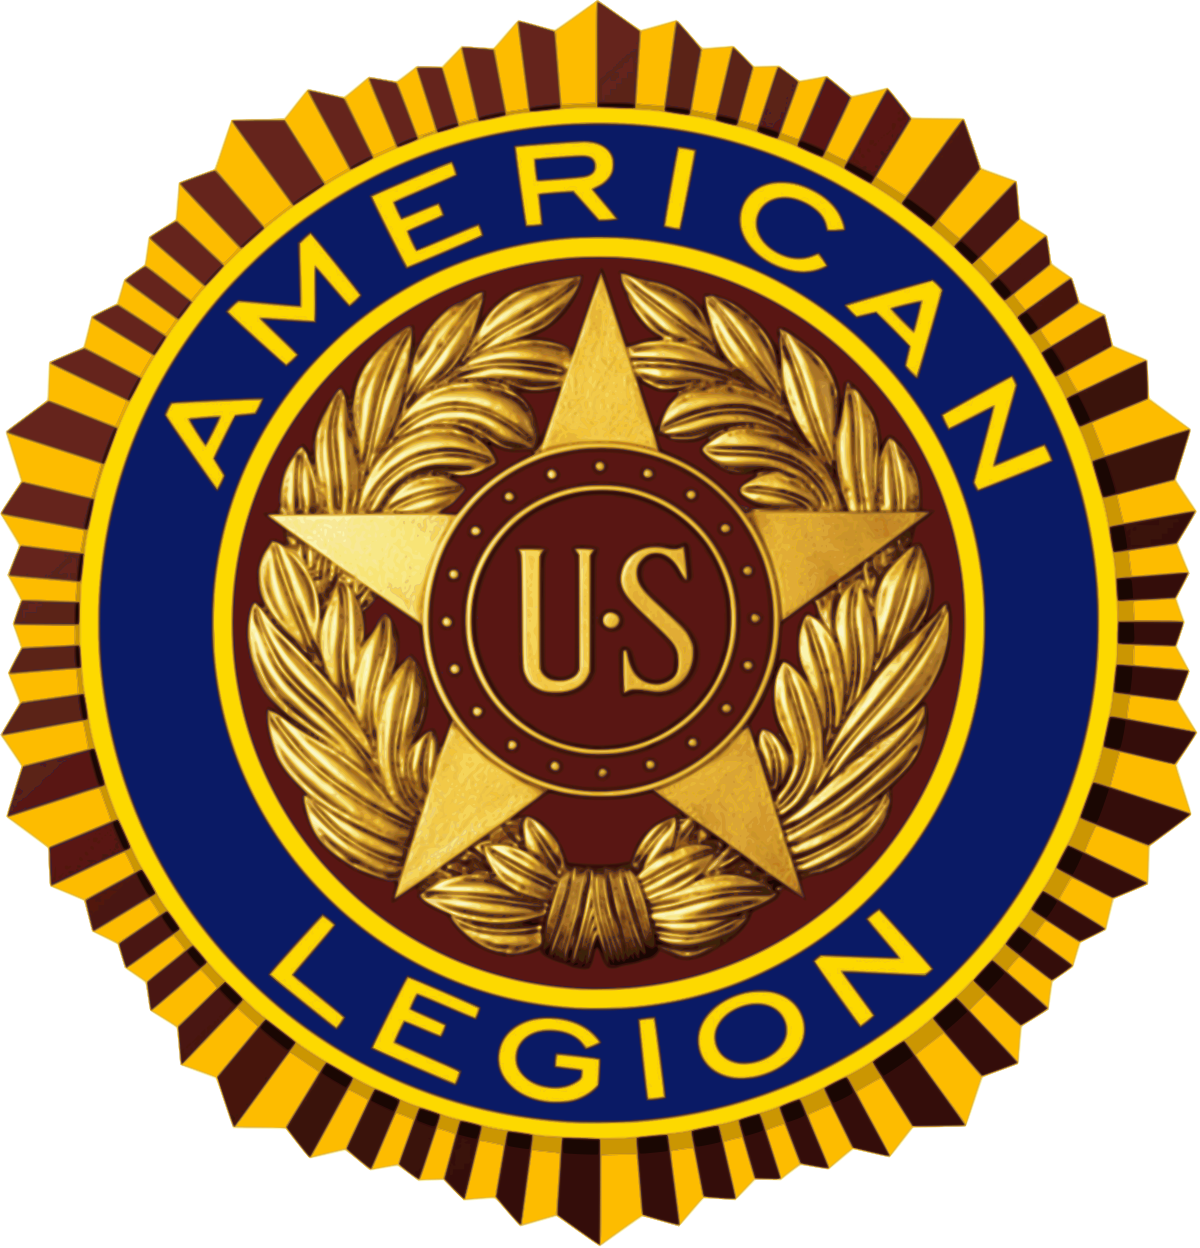 Warrroad American Legion